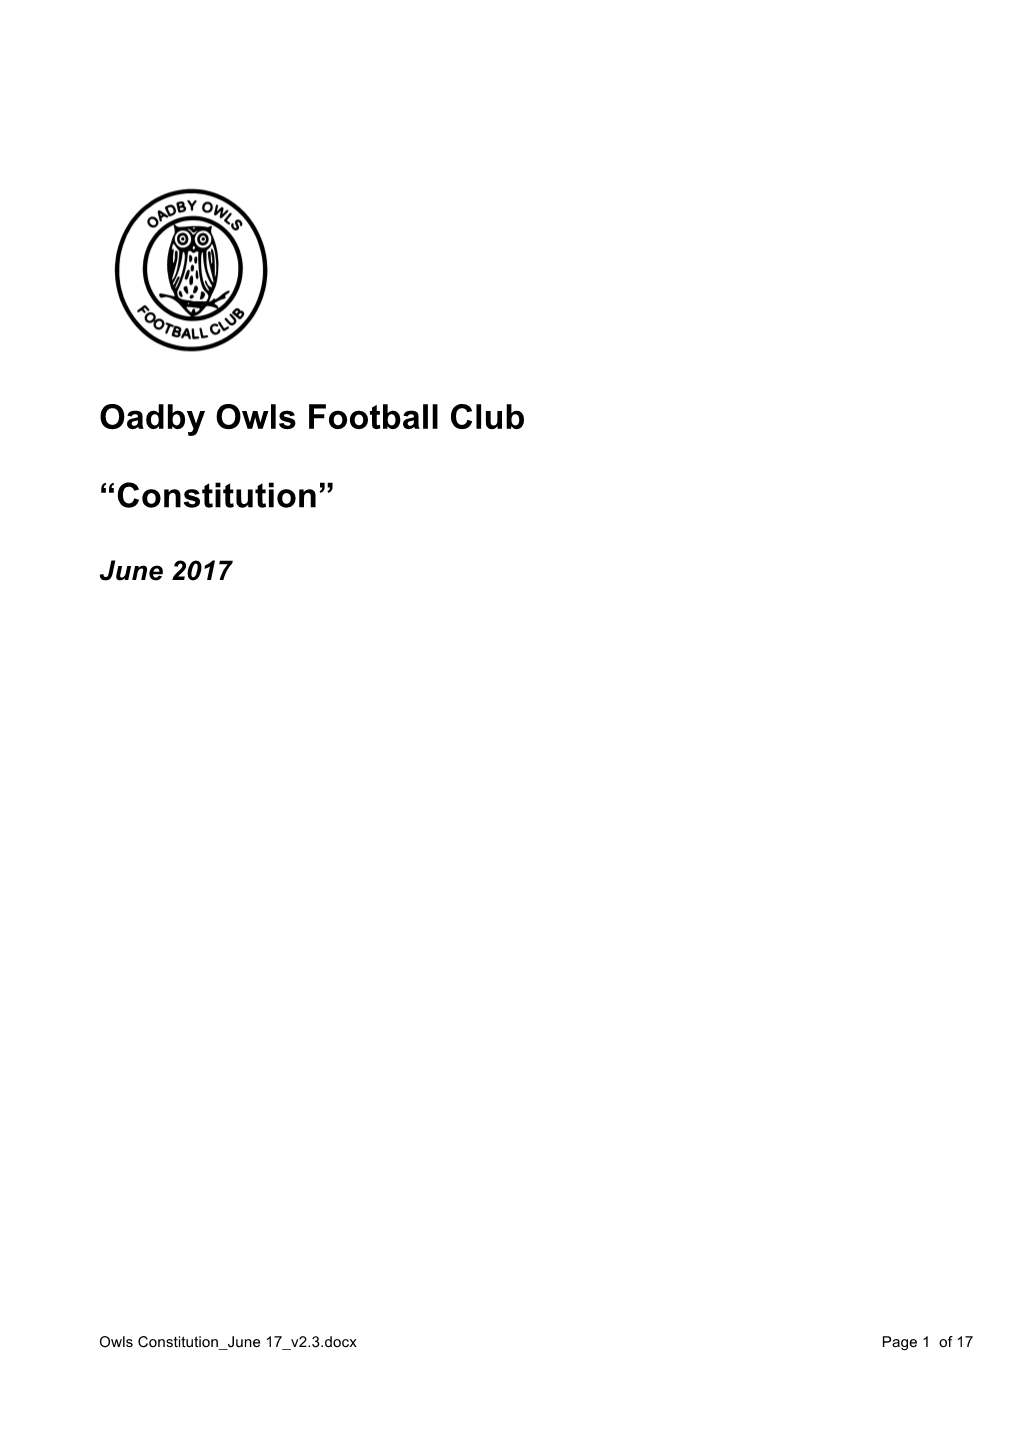 Oadby Owls Football Club “Constitution”